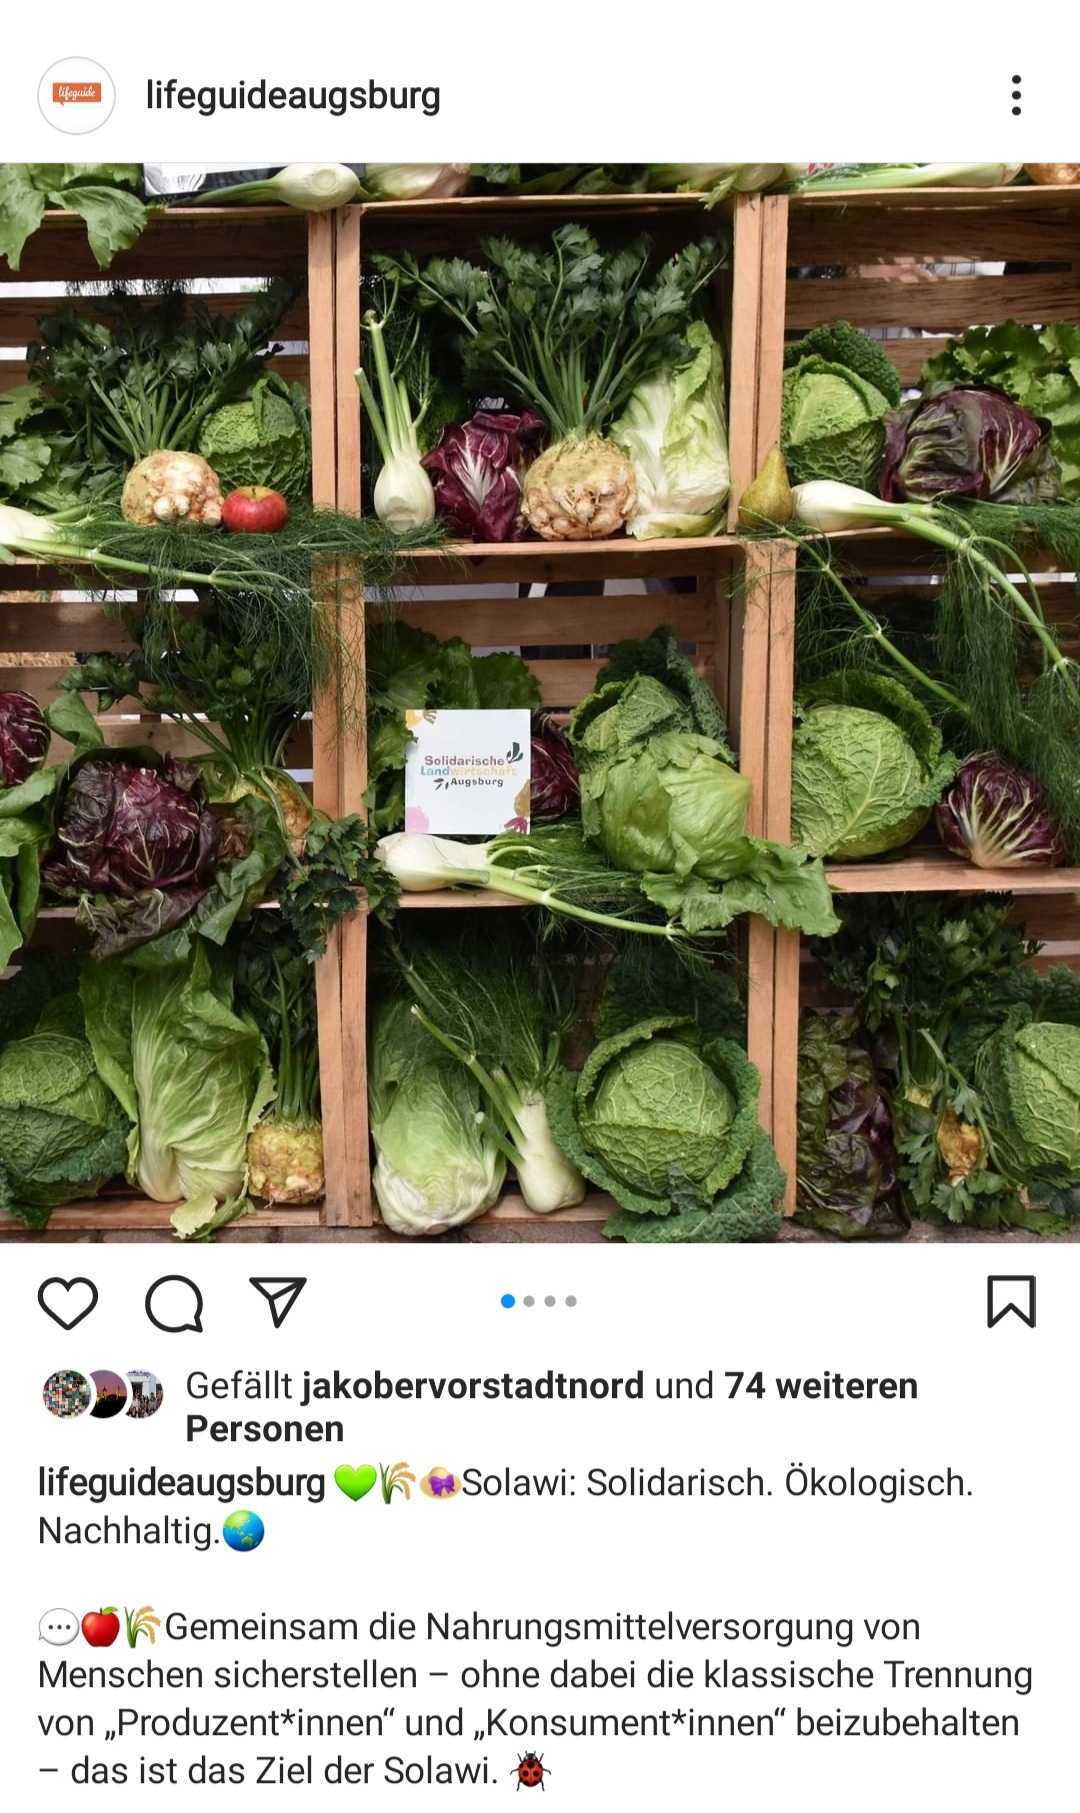 Instagram-Post des Lifeguide Augsburg zu Solidarische Landwirtschaft am 14.06.2021